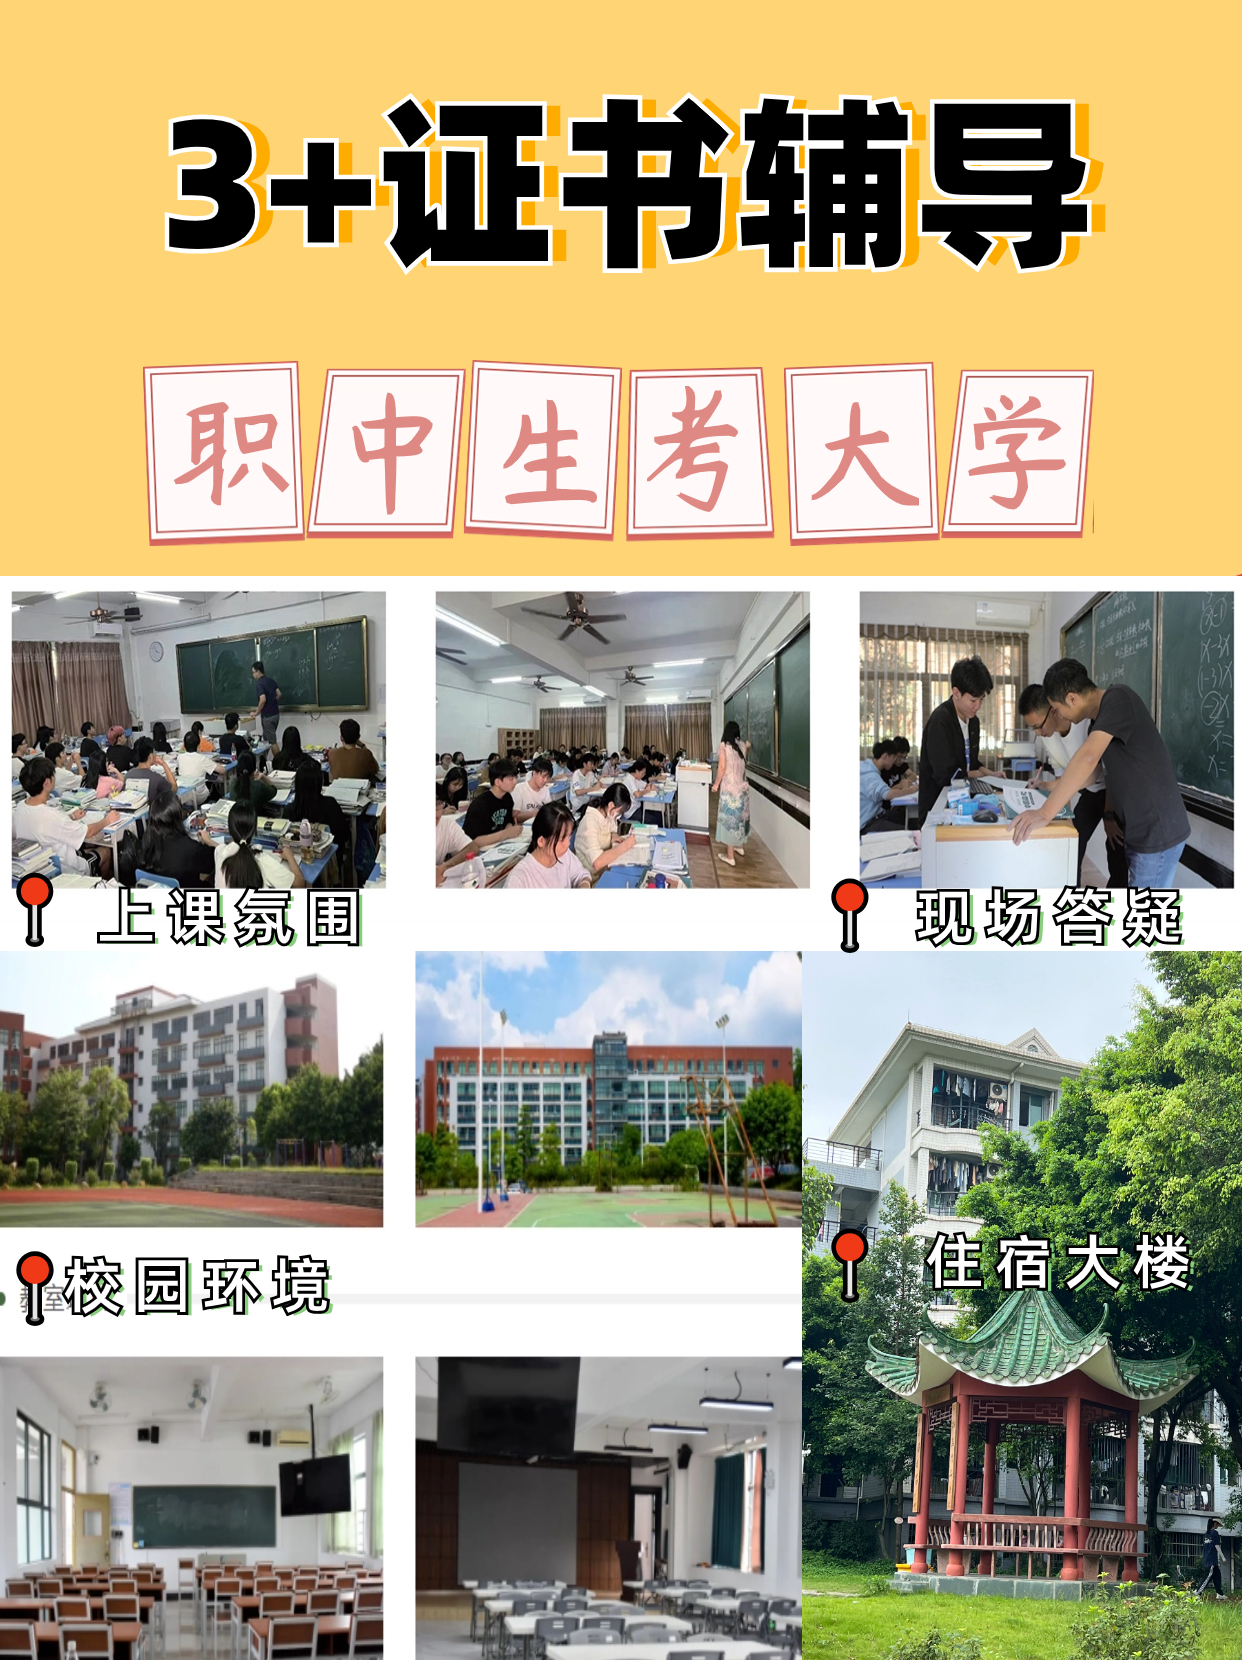 广东3+证书高职高考入学考试内容和大纲